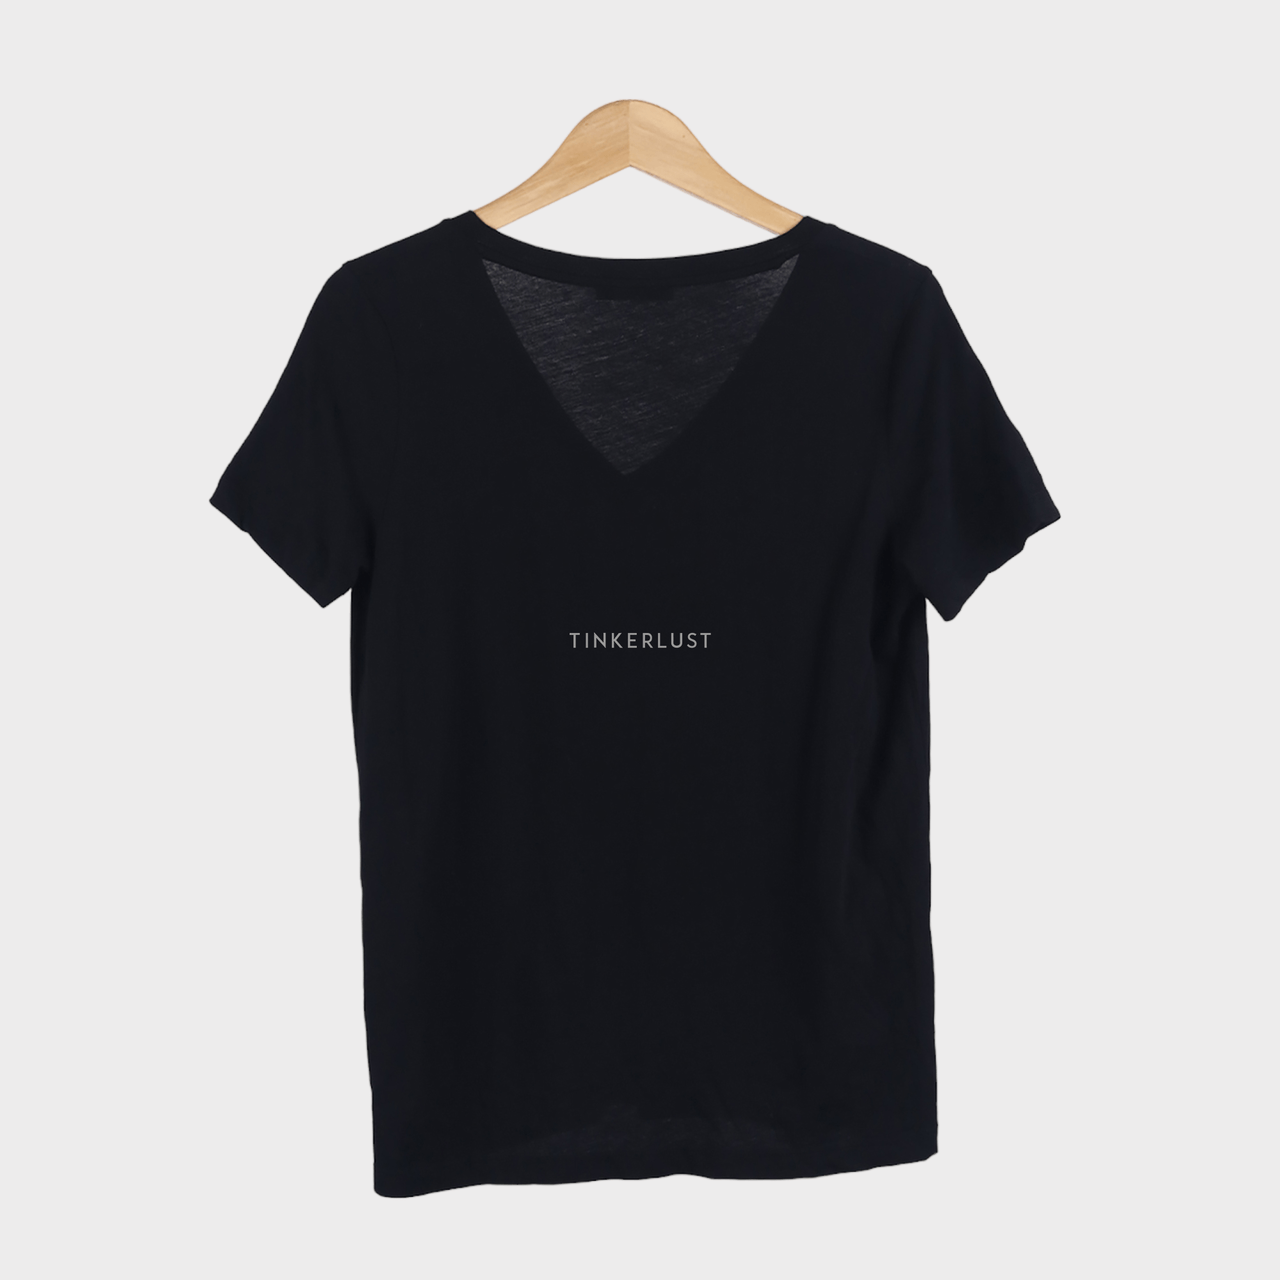 Zara Black V-Neck T-Shirt